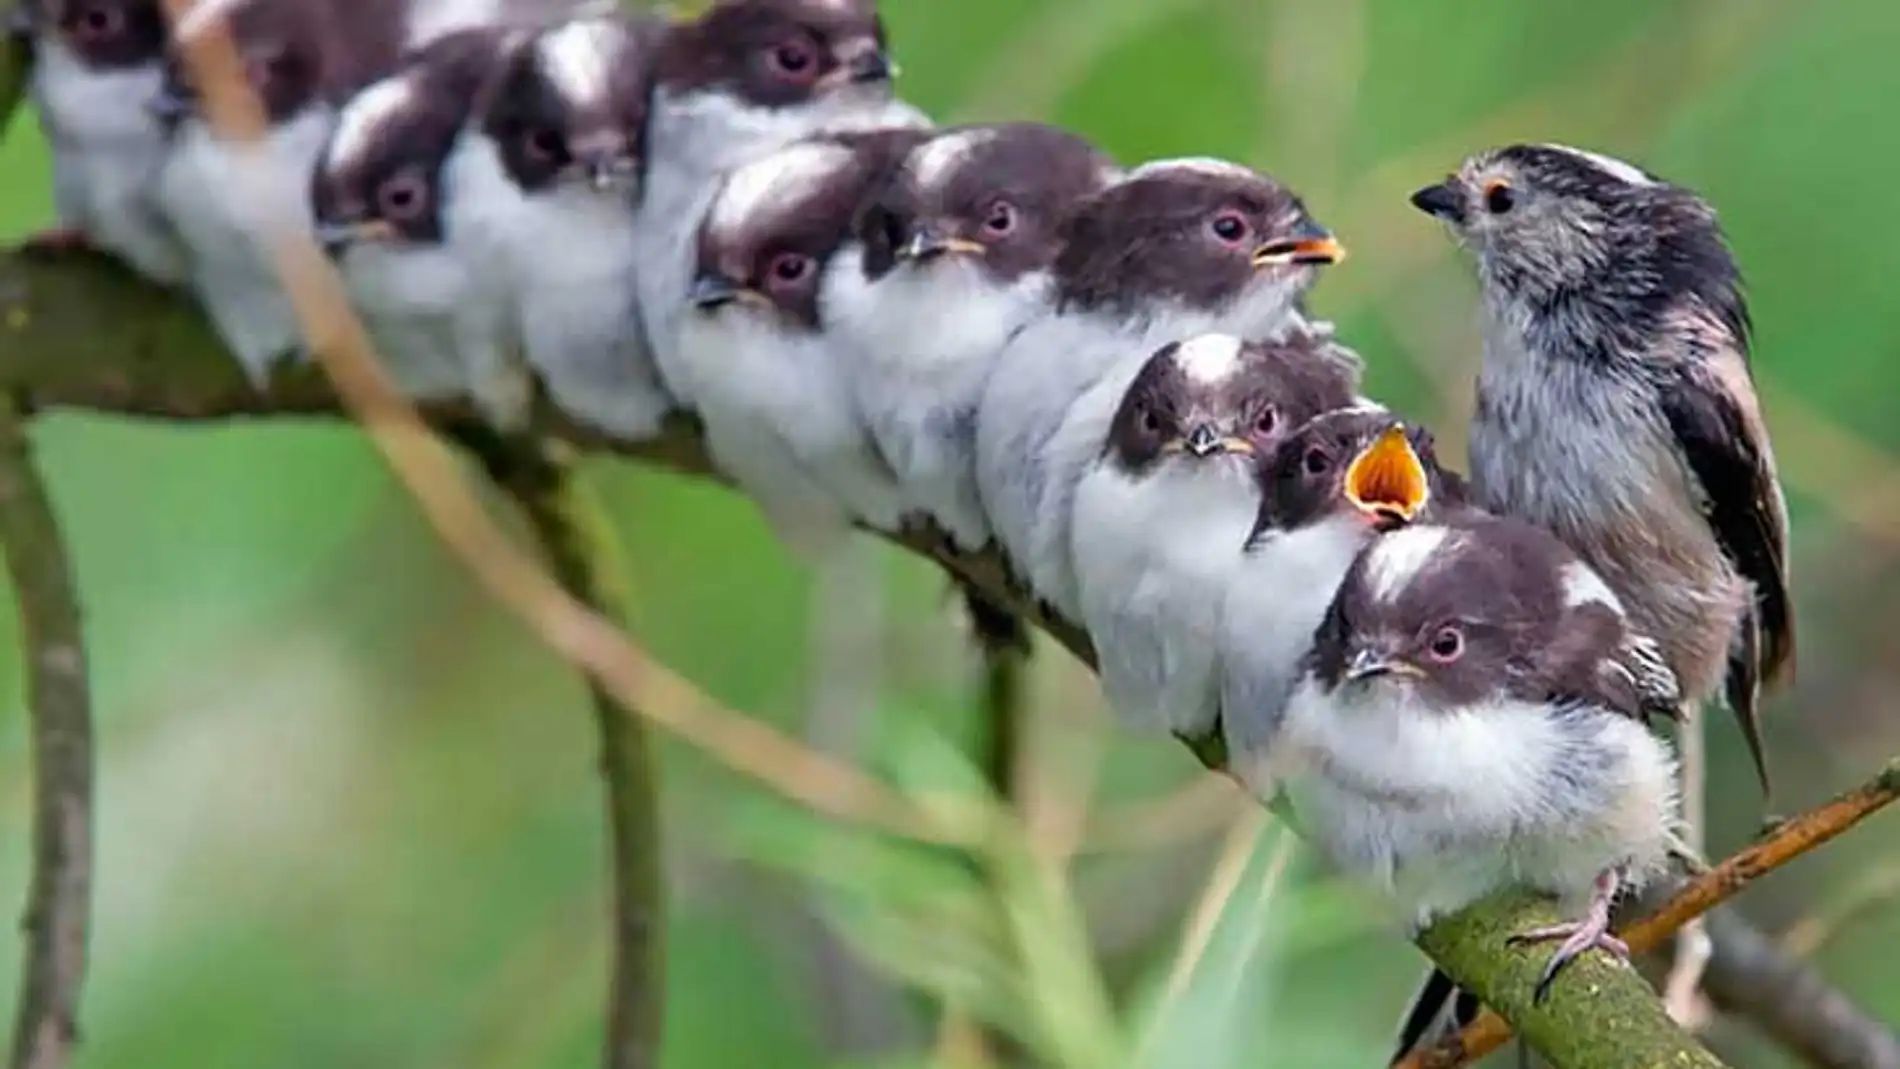 Bonita imagen familiar de un ave con sus polluelos